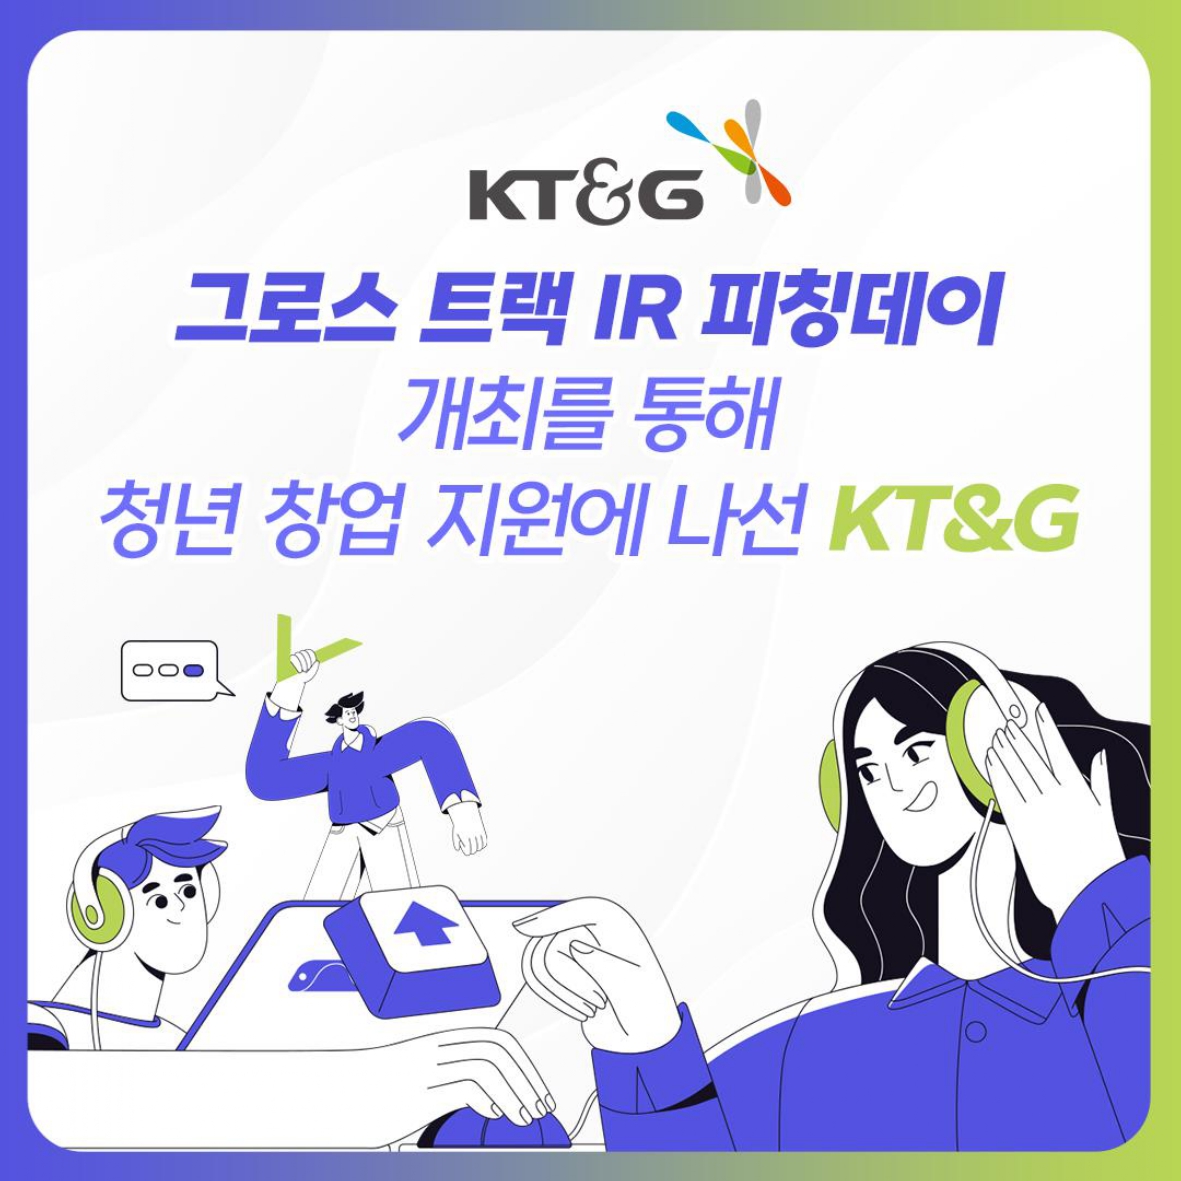 그로스 트랙 IR 피칭데이 개최를 통해 청년 창업 지원에 나선 KT&G